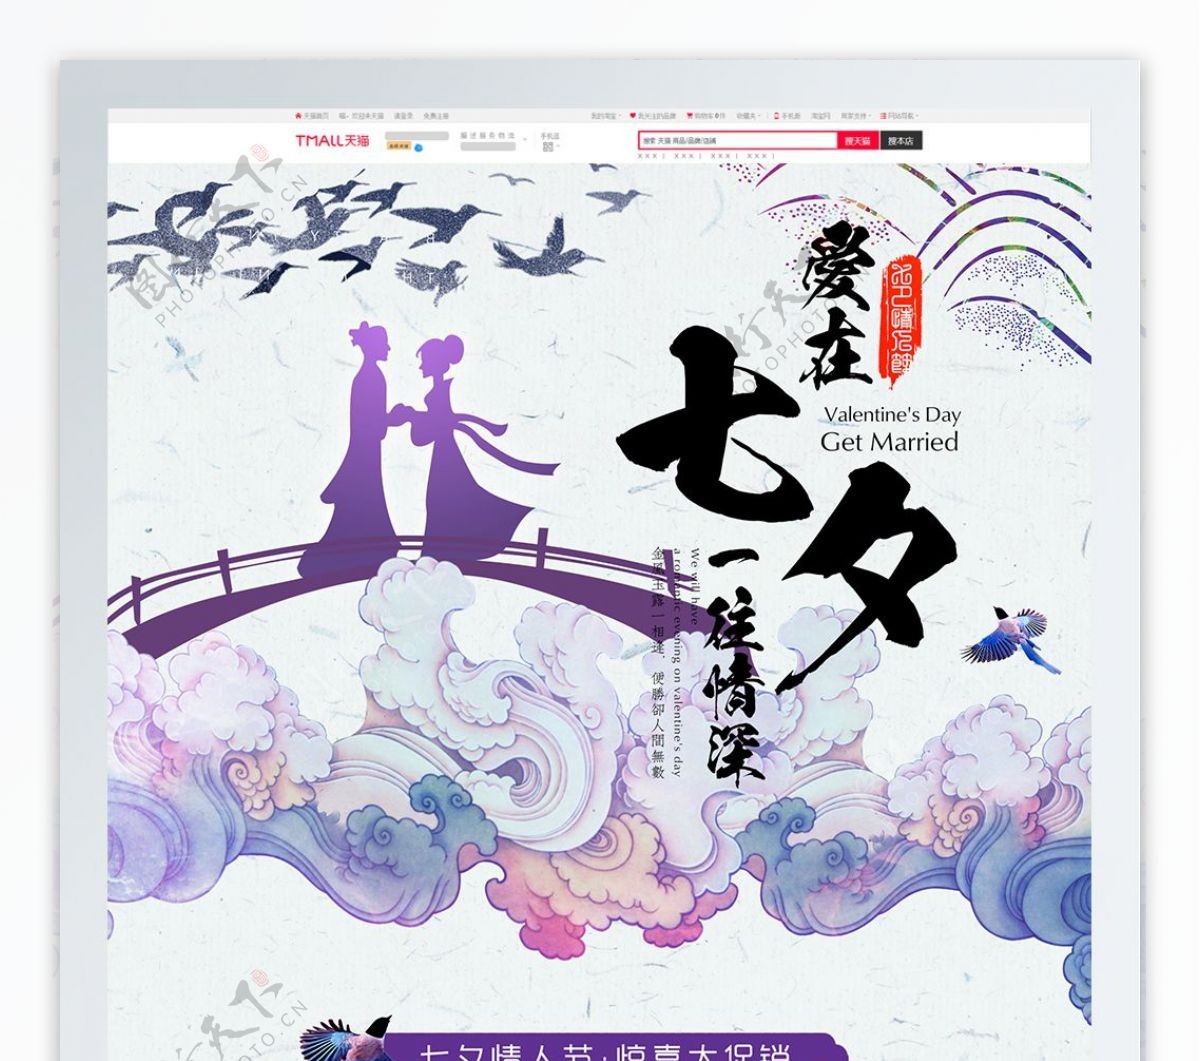 创意水彩中国风七夕情人节首页模板